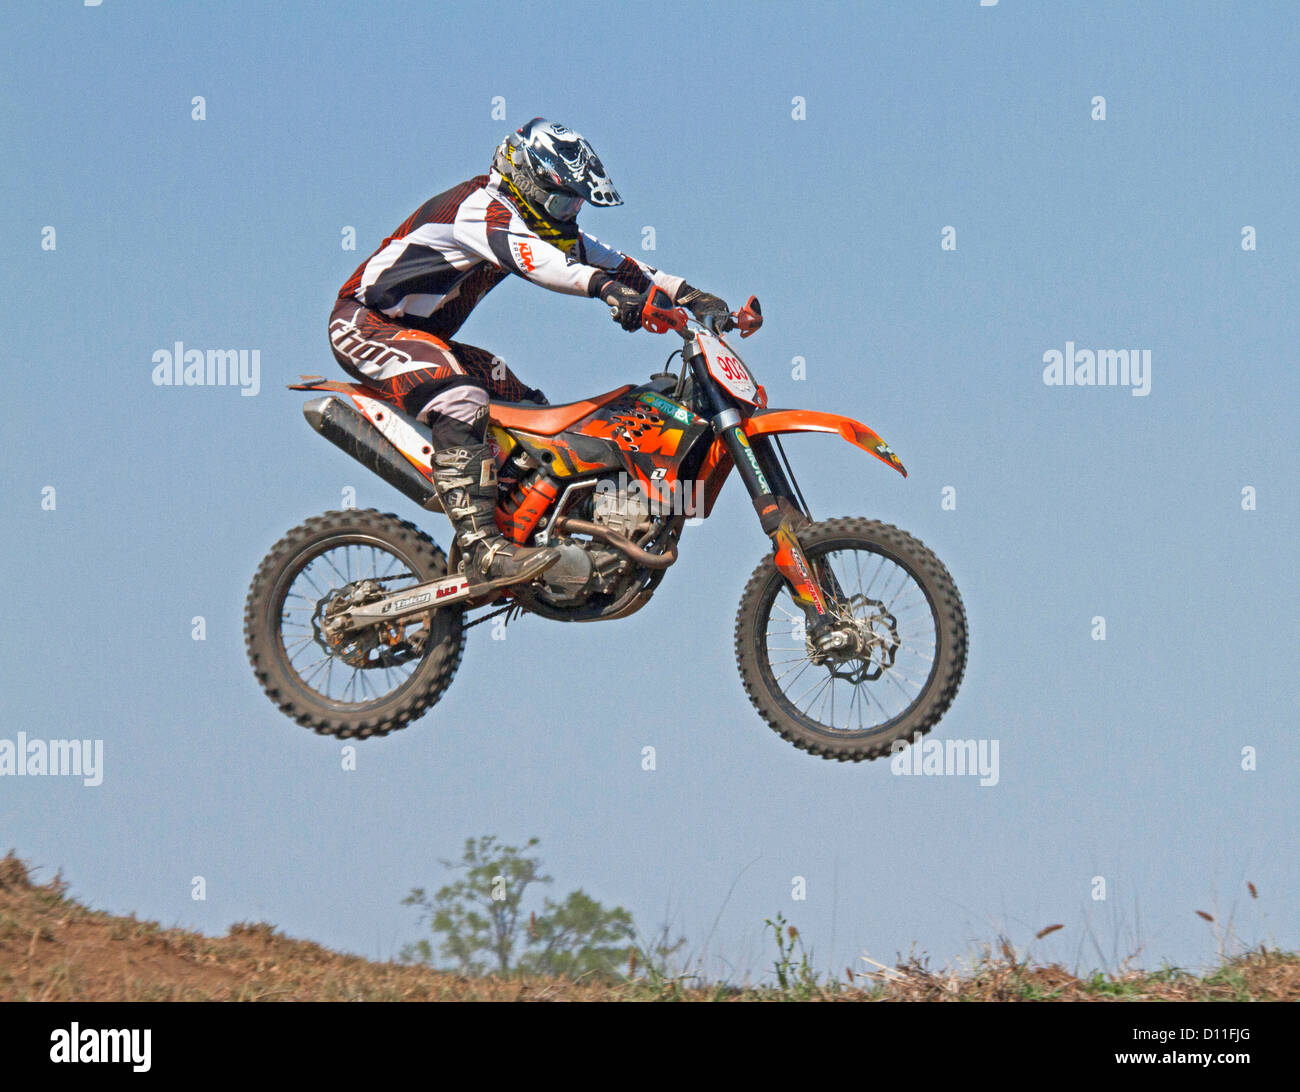 Motorrad / Trailbike Fahrt auf seinem Fahrrad in der Luft gegen blauen  Himmel Stockfotografie - Alamy